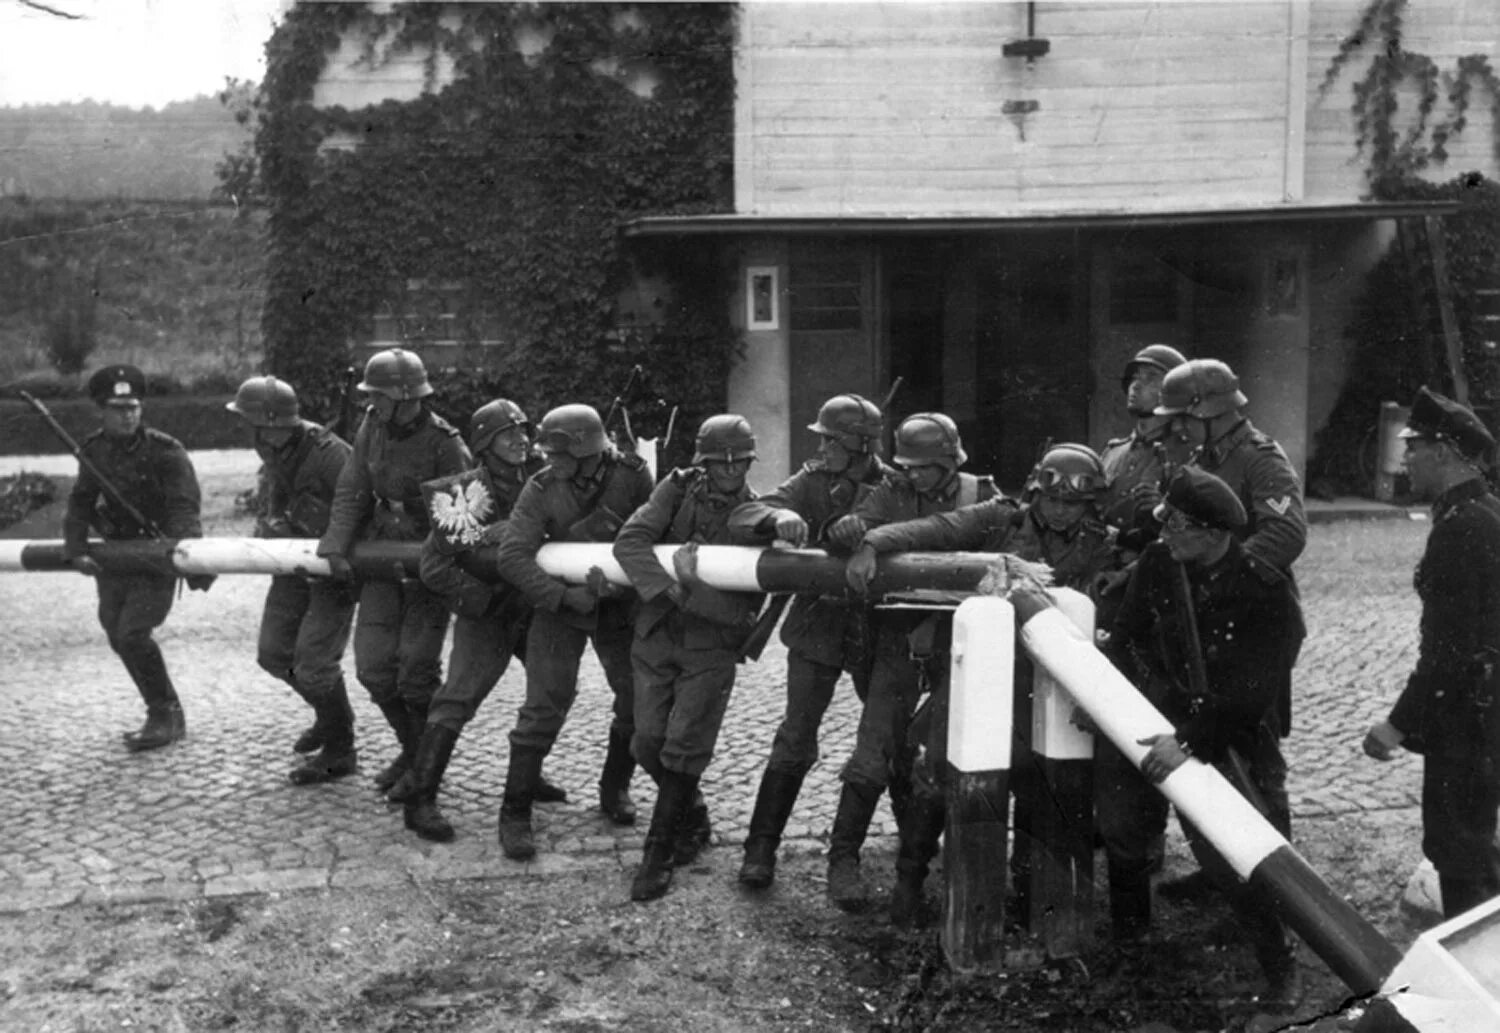 22 июня 1939 г. 1.9.1939 Германские войска напали на Польшу. Вторжение в Польшу 1939 Германия. Немецкие солдаты Польша ш лагбаун.